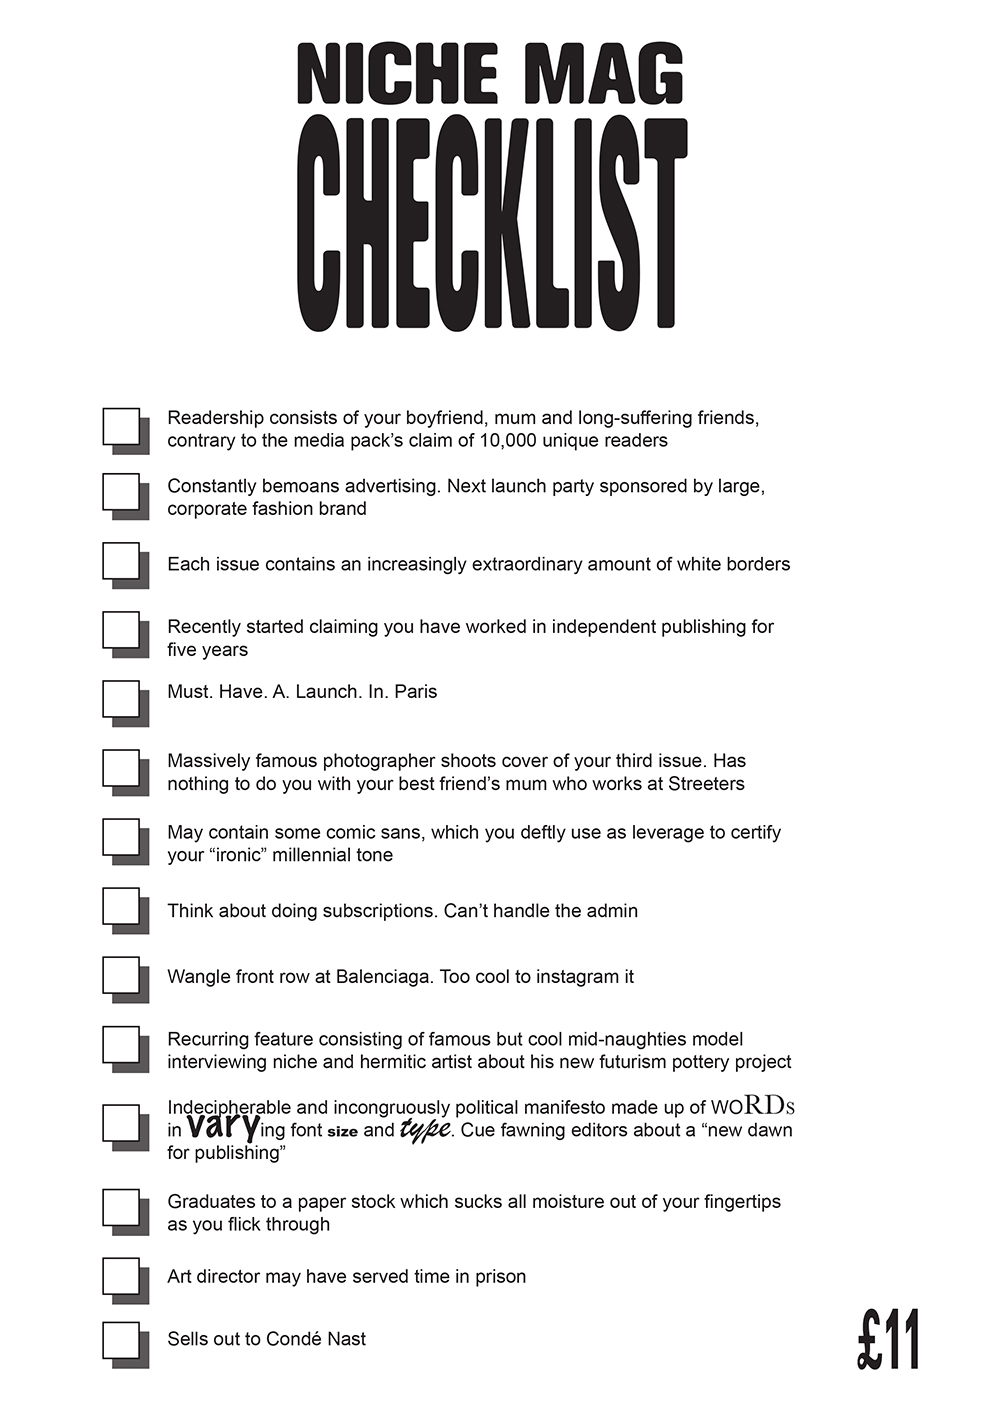 mushpit_niche_mags_checklist